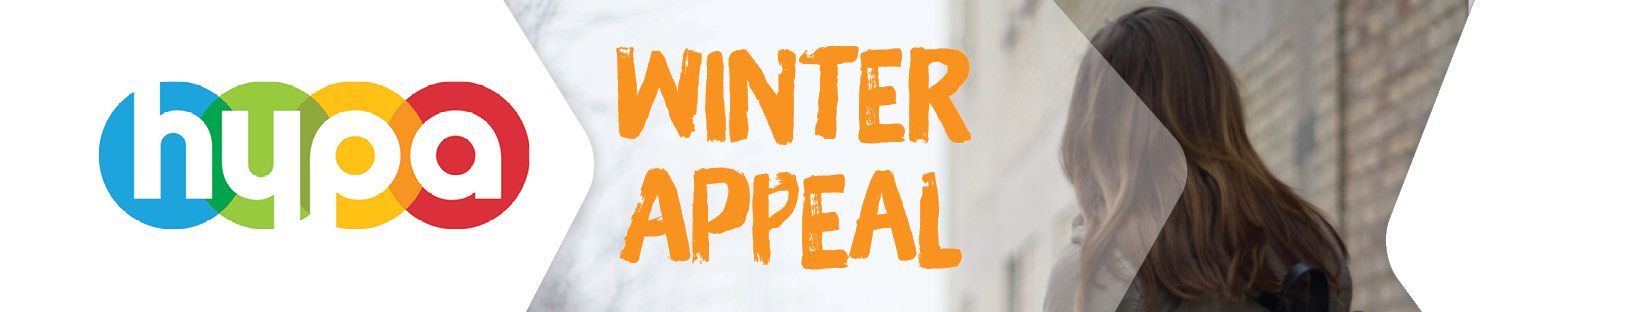 HYPA Winter Appeal